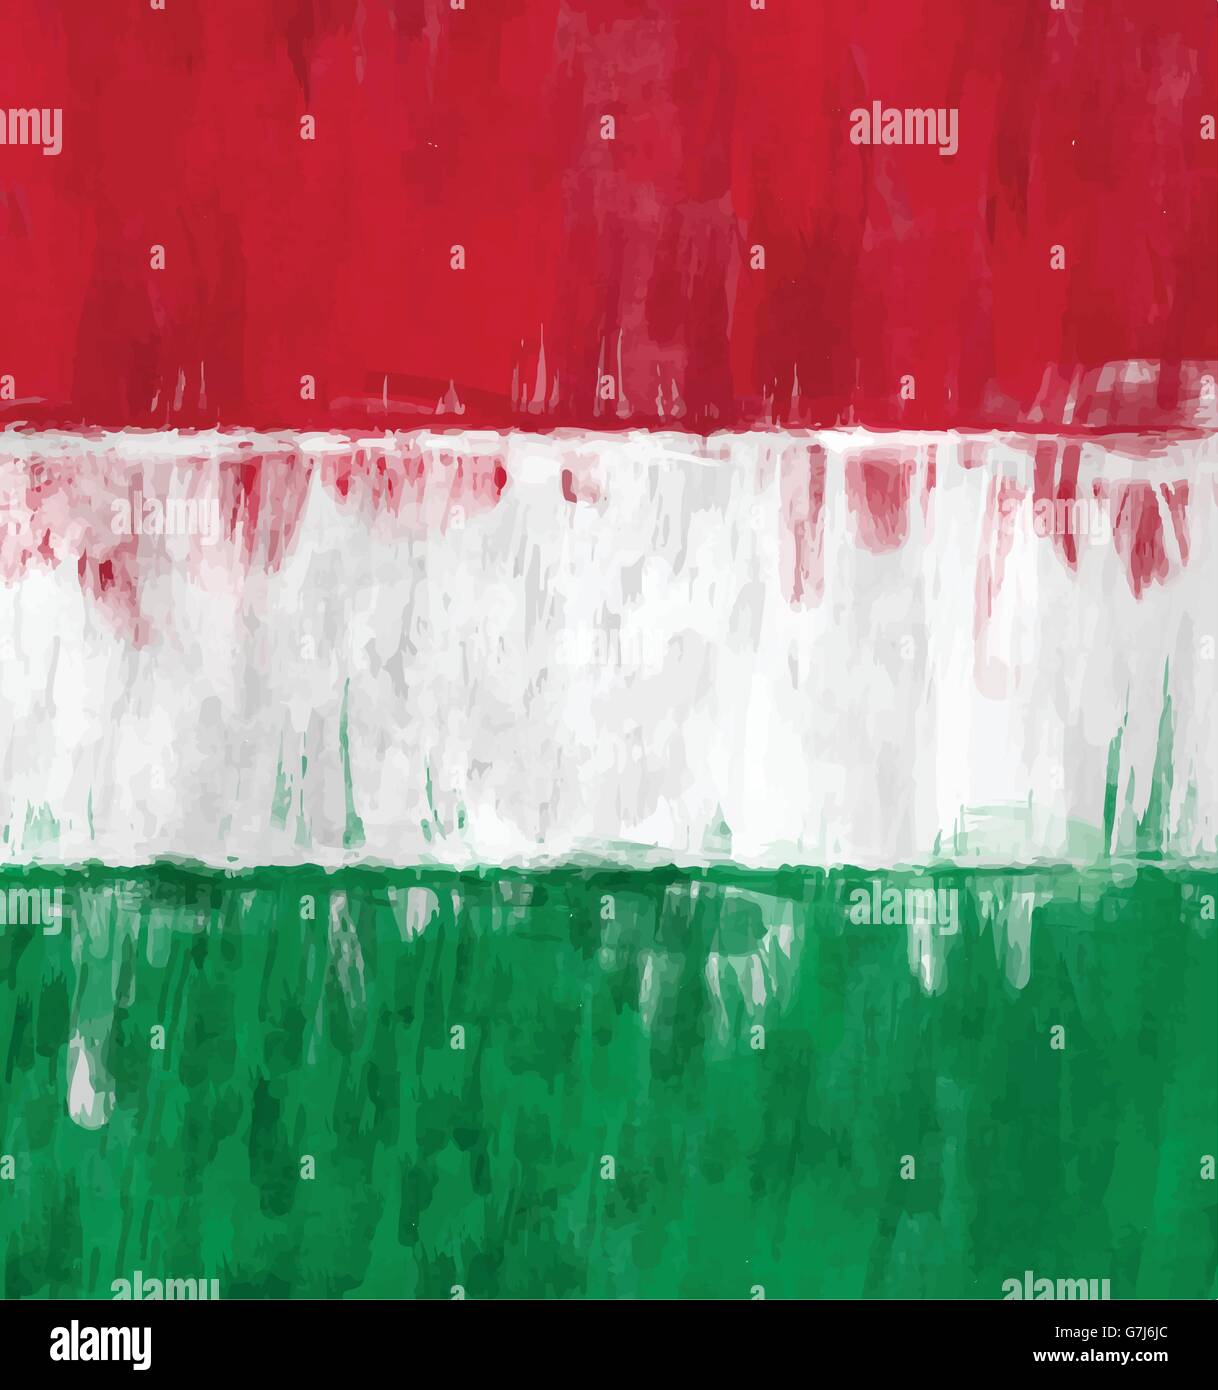 ungarische Flagge skizzenhafte Malerei Vektor Hintergrund illustration Stock Vektor